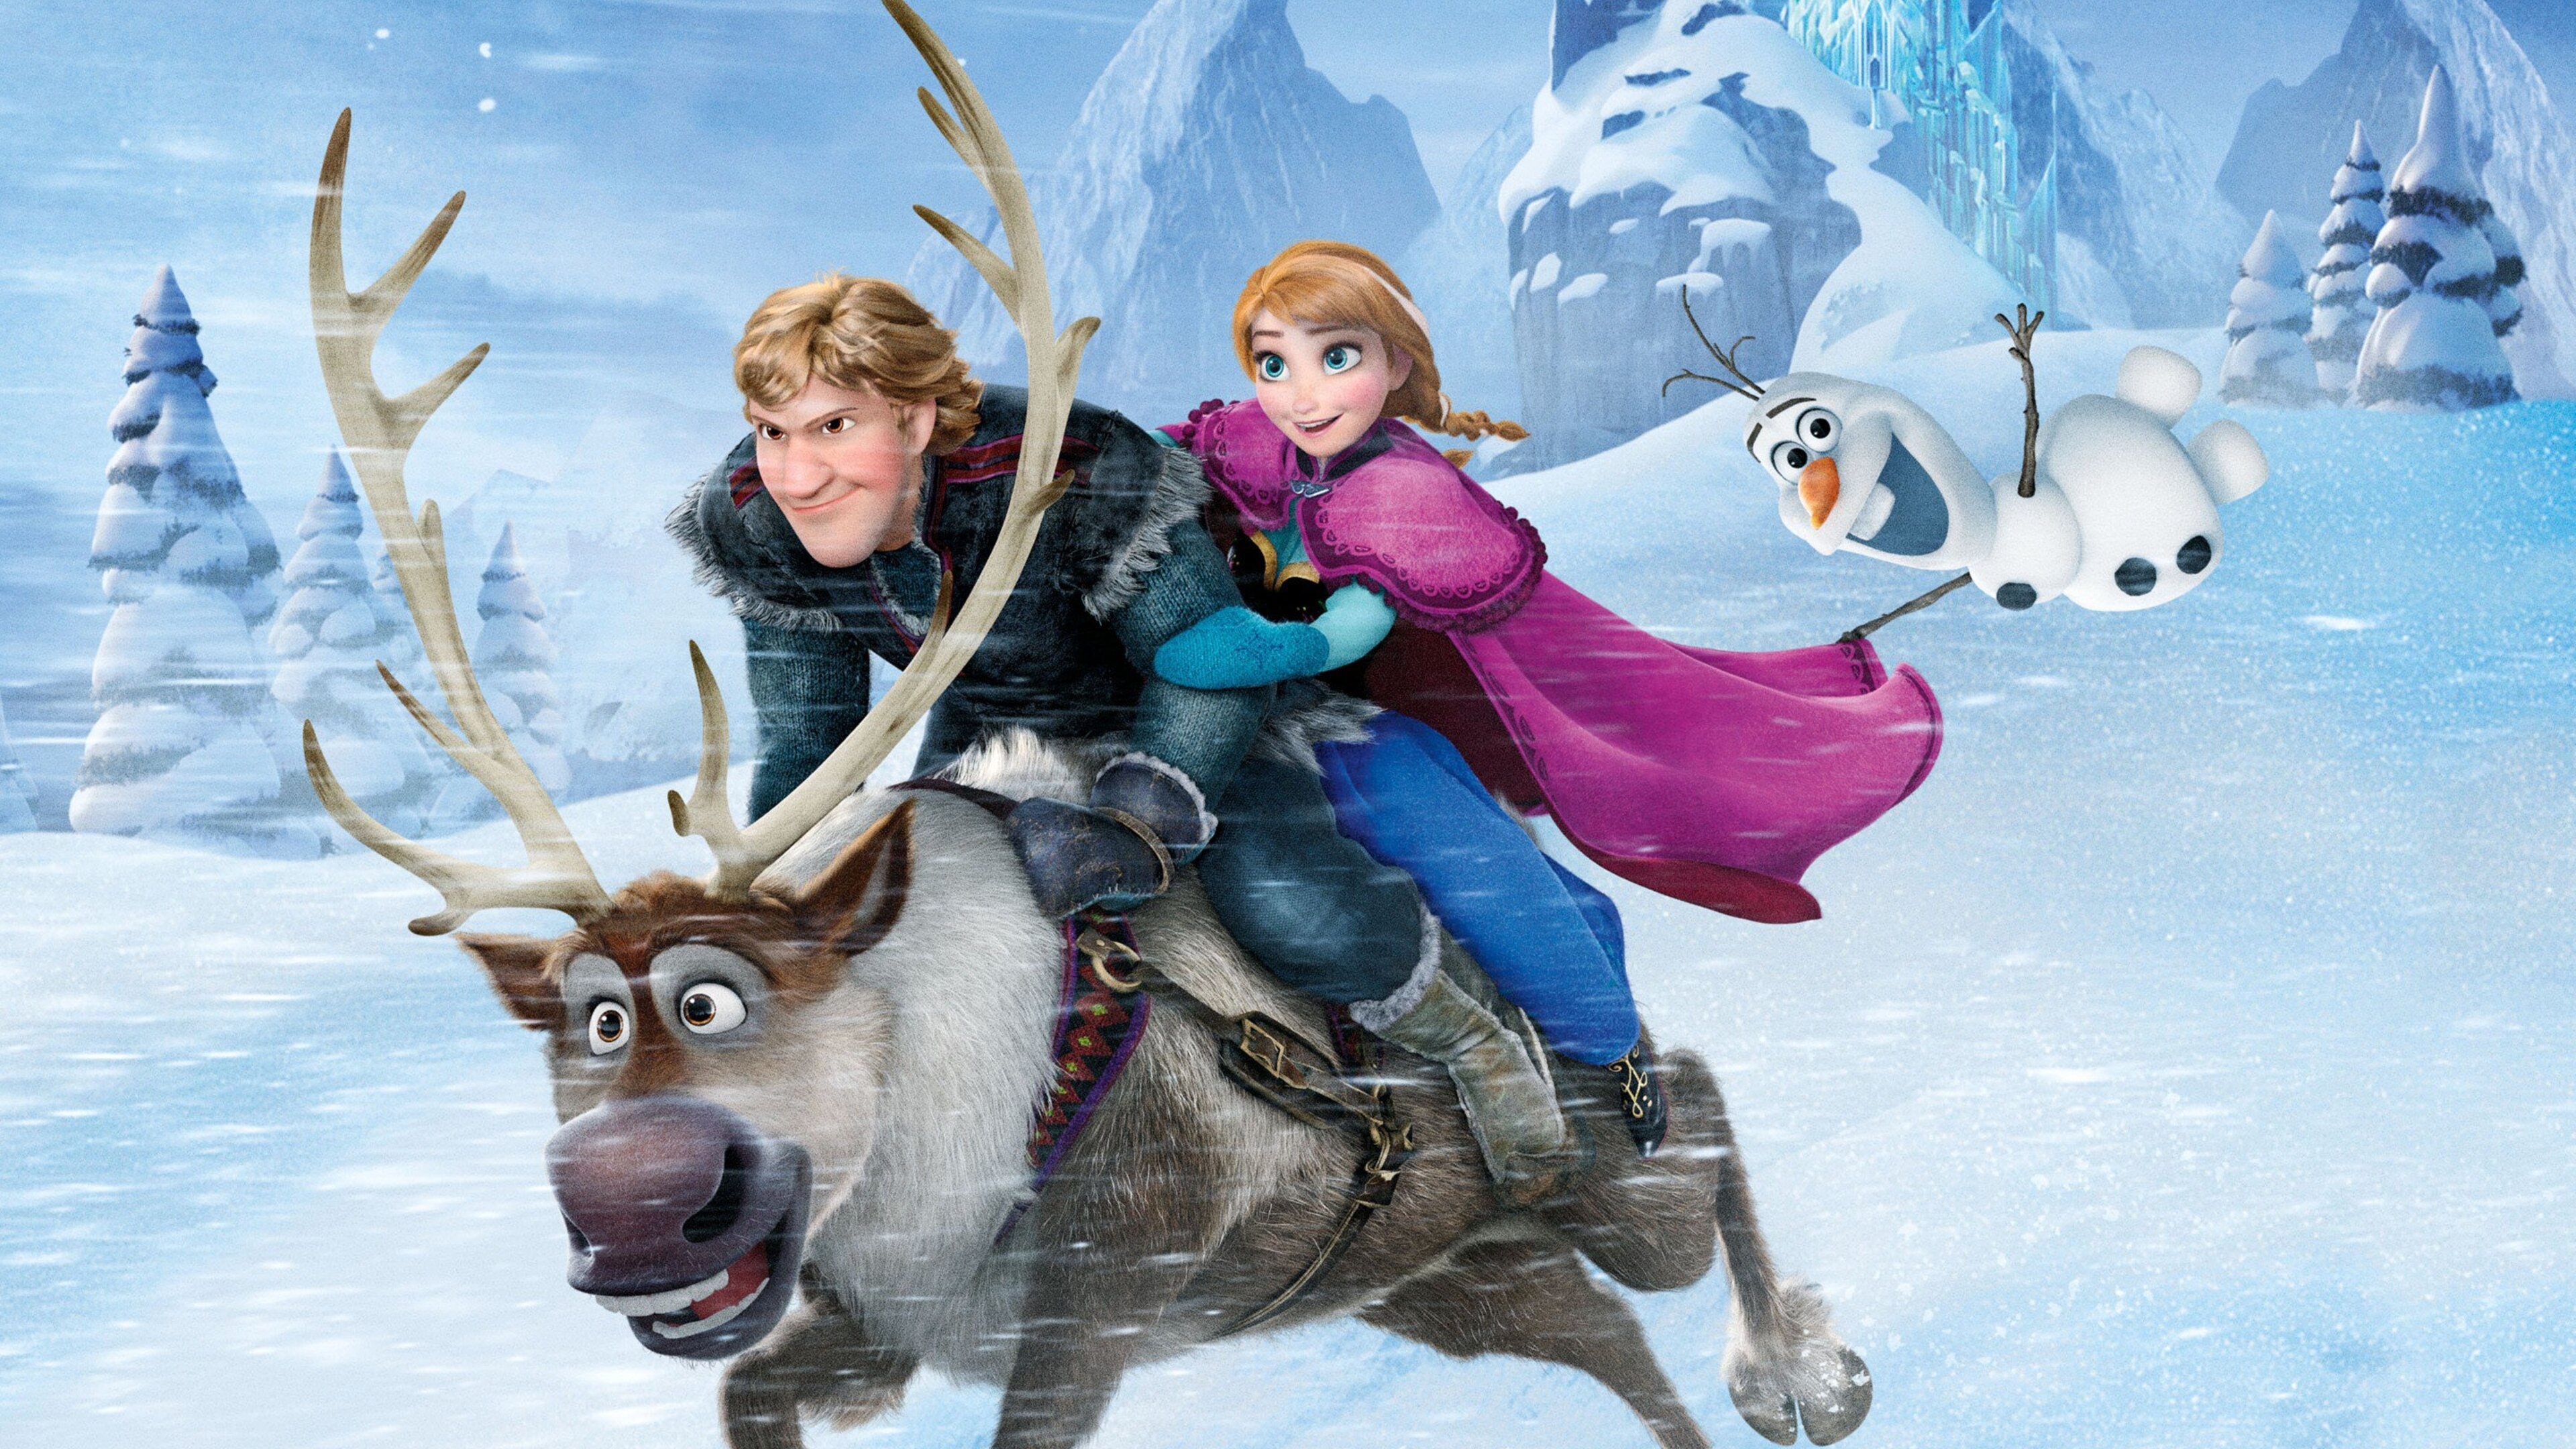 Sven, Frozen movie, 4K wallpapers, Photos, 3840x2160 4K Desktop